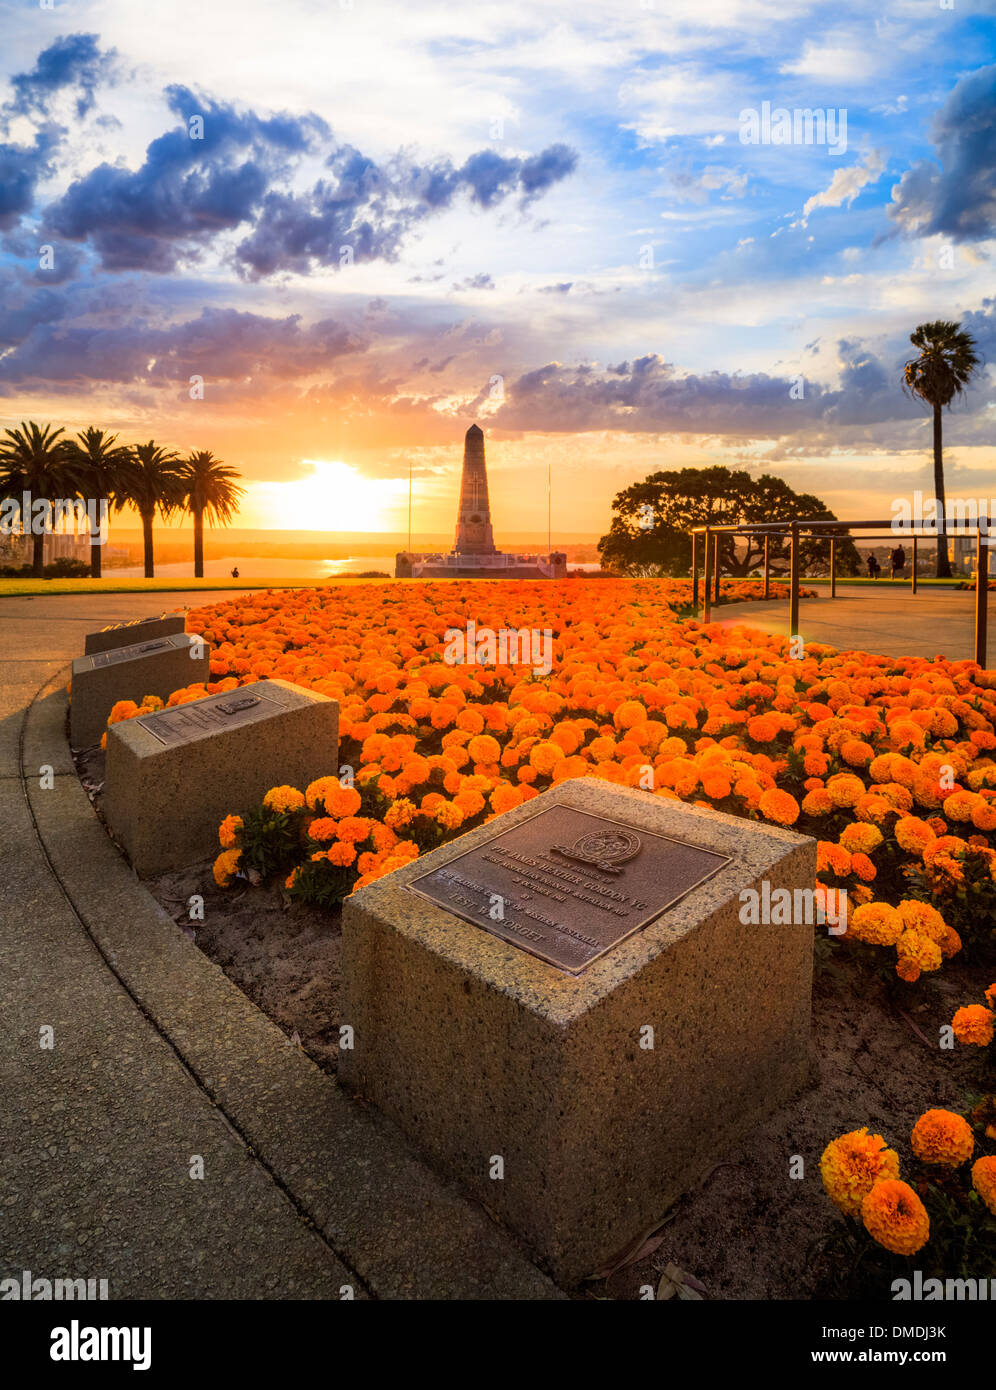 The war memorial, memorial plaques at sunrise in Kings Park, Perth, Western Australia Stock Photo